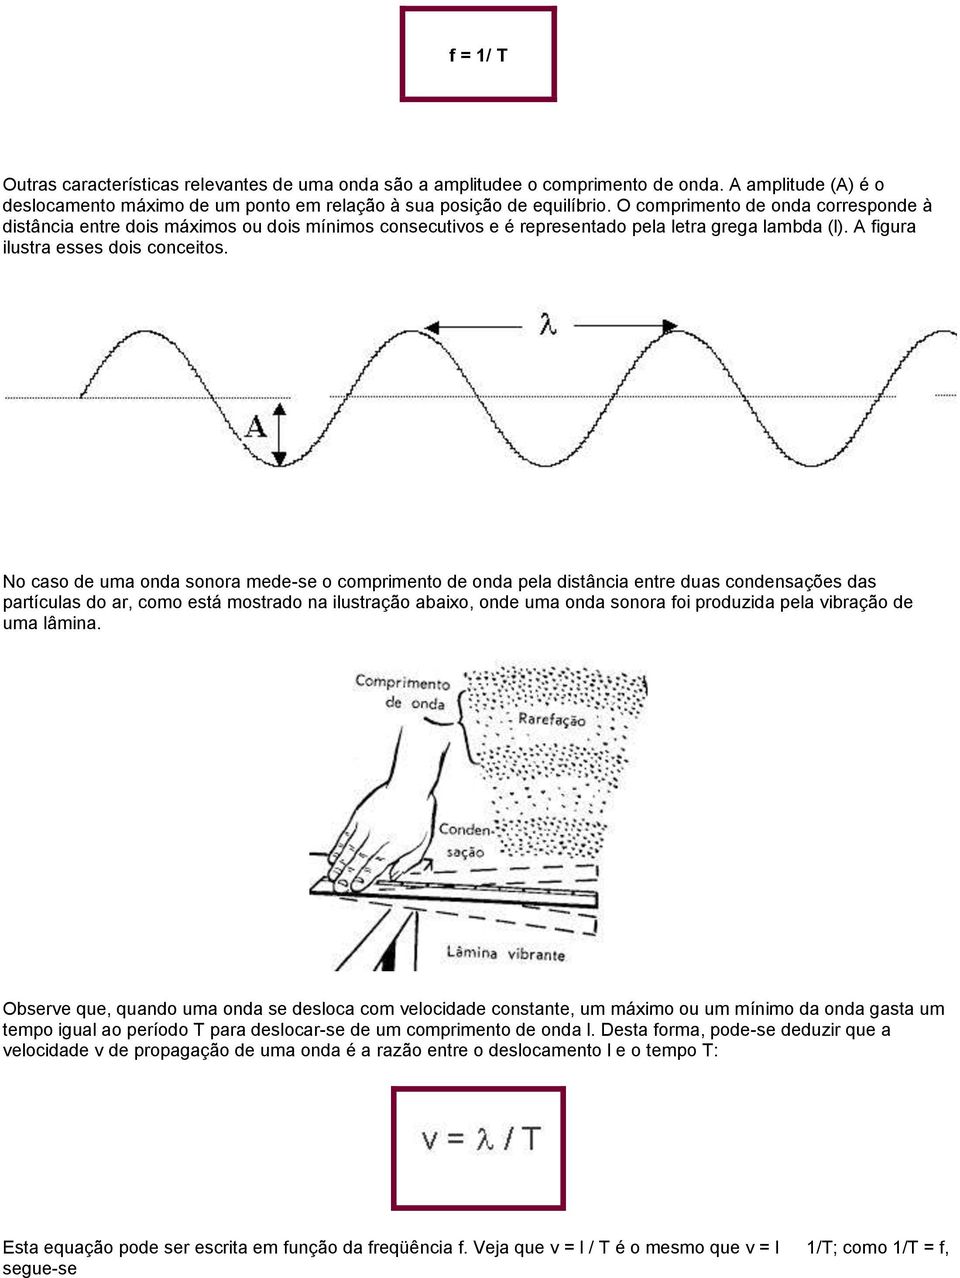 No caso de uma onda sonora mede-se o comprimento de onda pela distância entre duas condensações das partículas do ar, como está mostrado na ilustração abaixo, onde uma onda sonora foi produzida pela